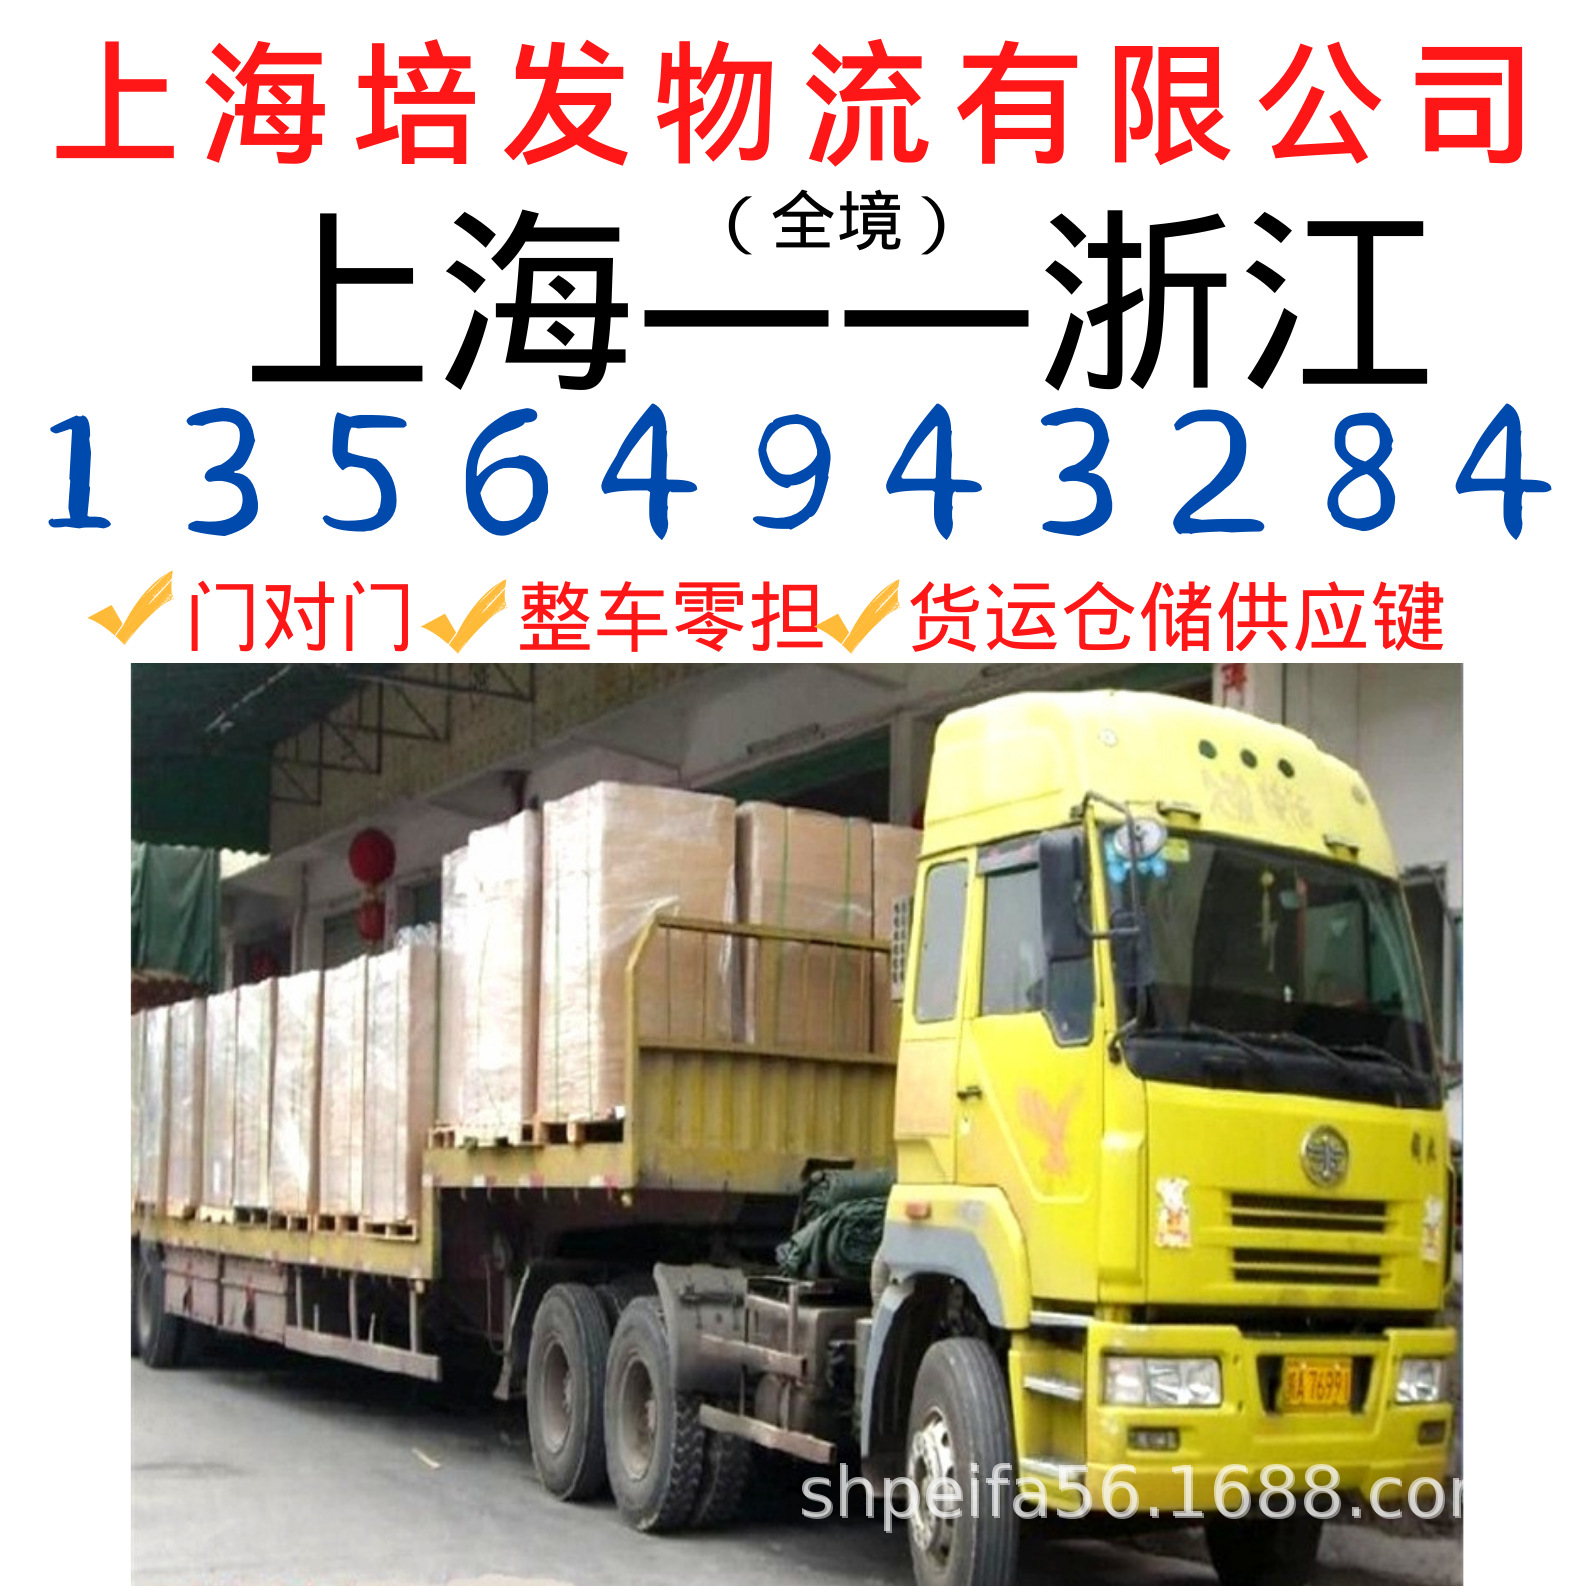 上海到至杭州的物流运输车队、回程车、返程车、货运代理公司